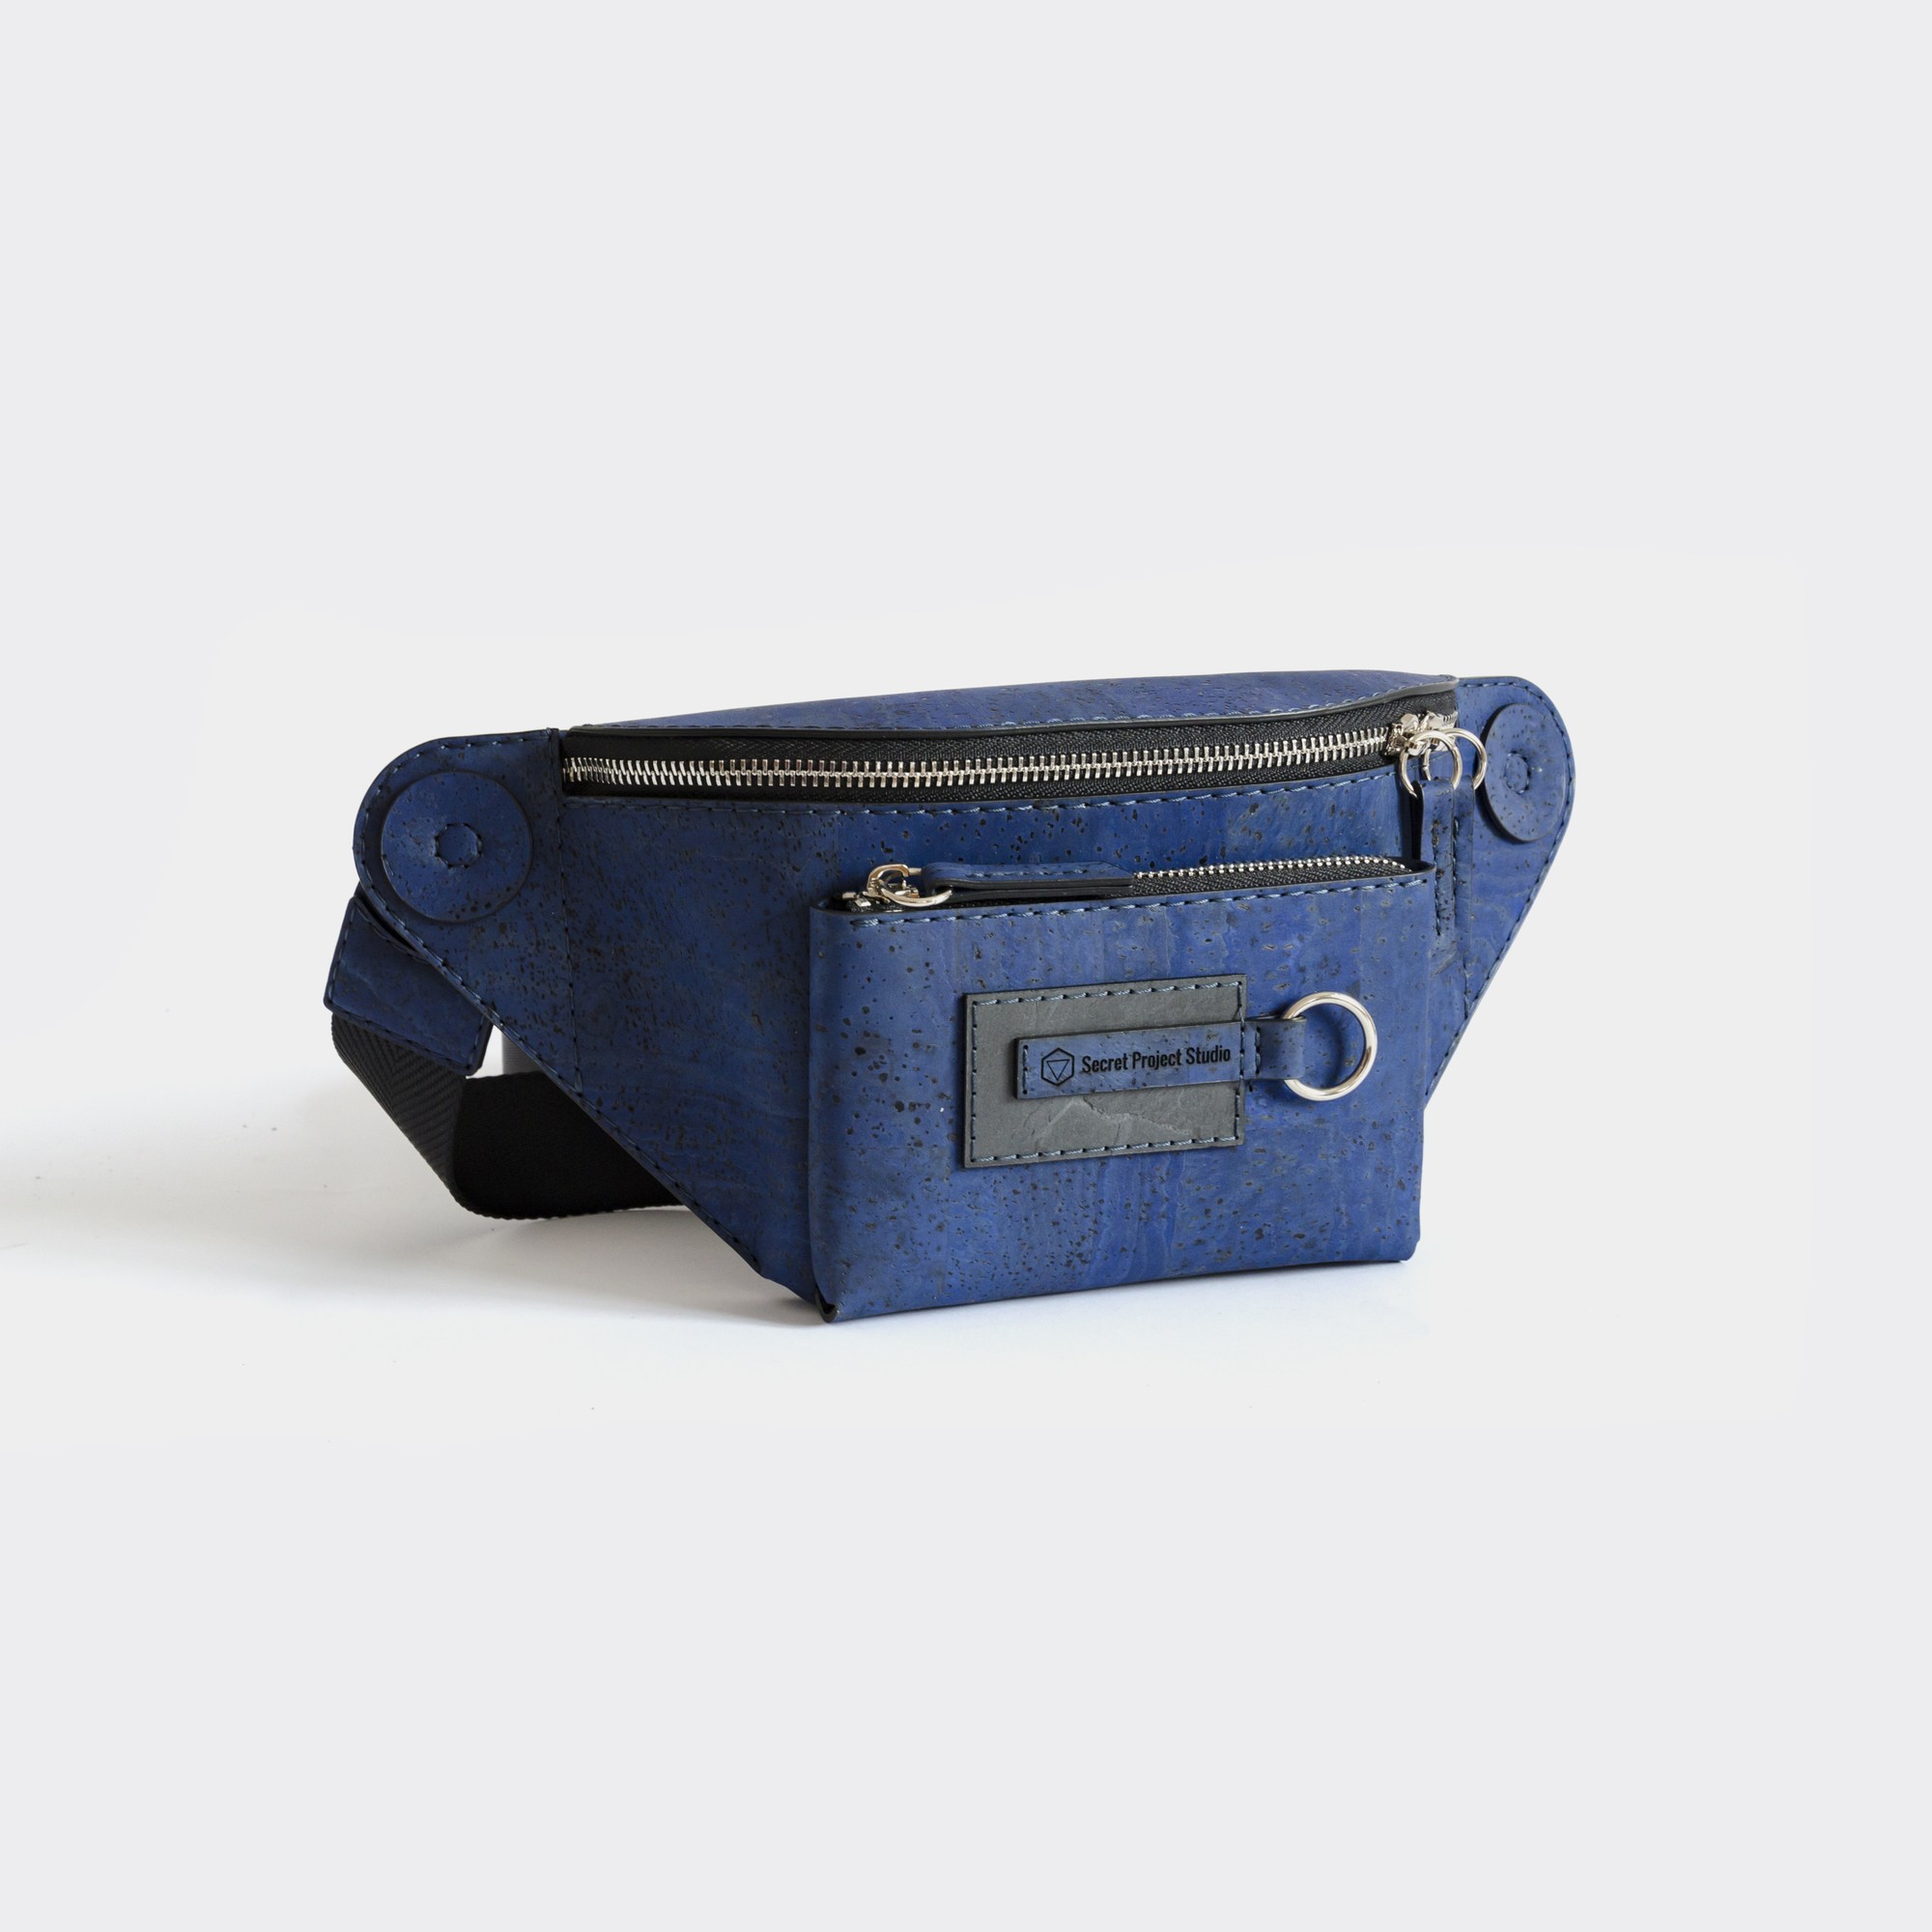 Natural cork chest bag Halti with pocket in denim blue color